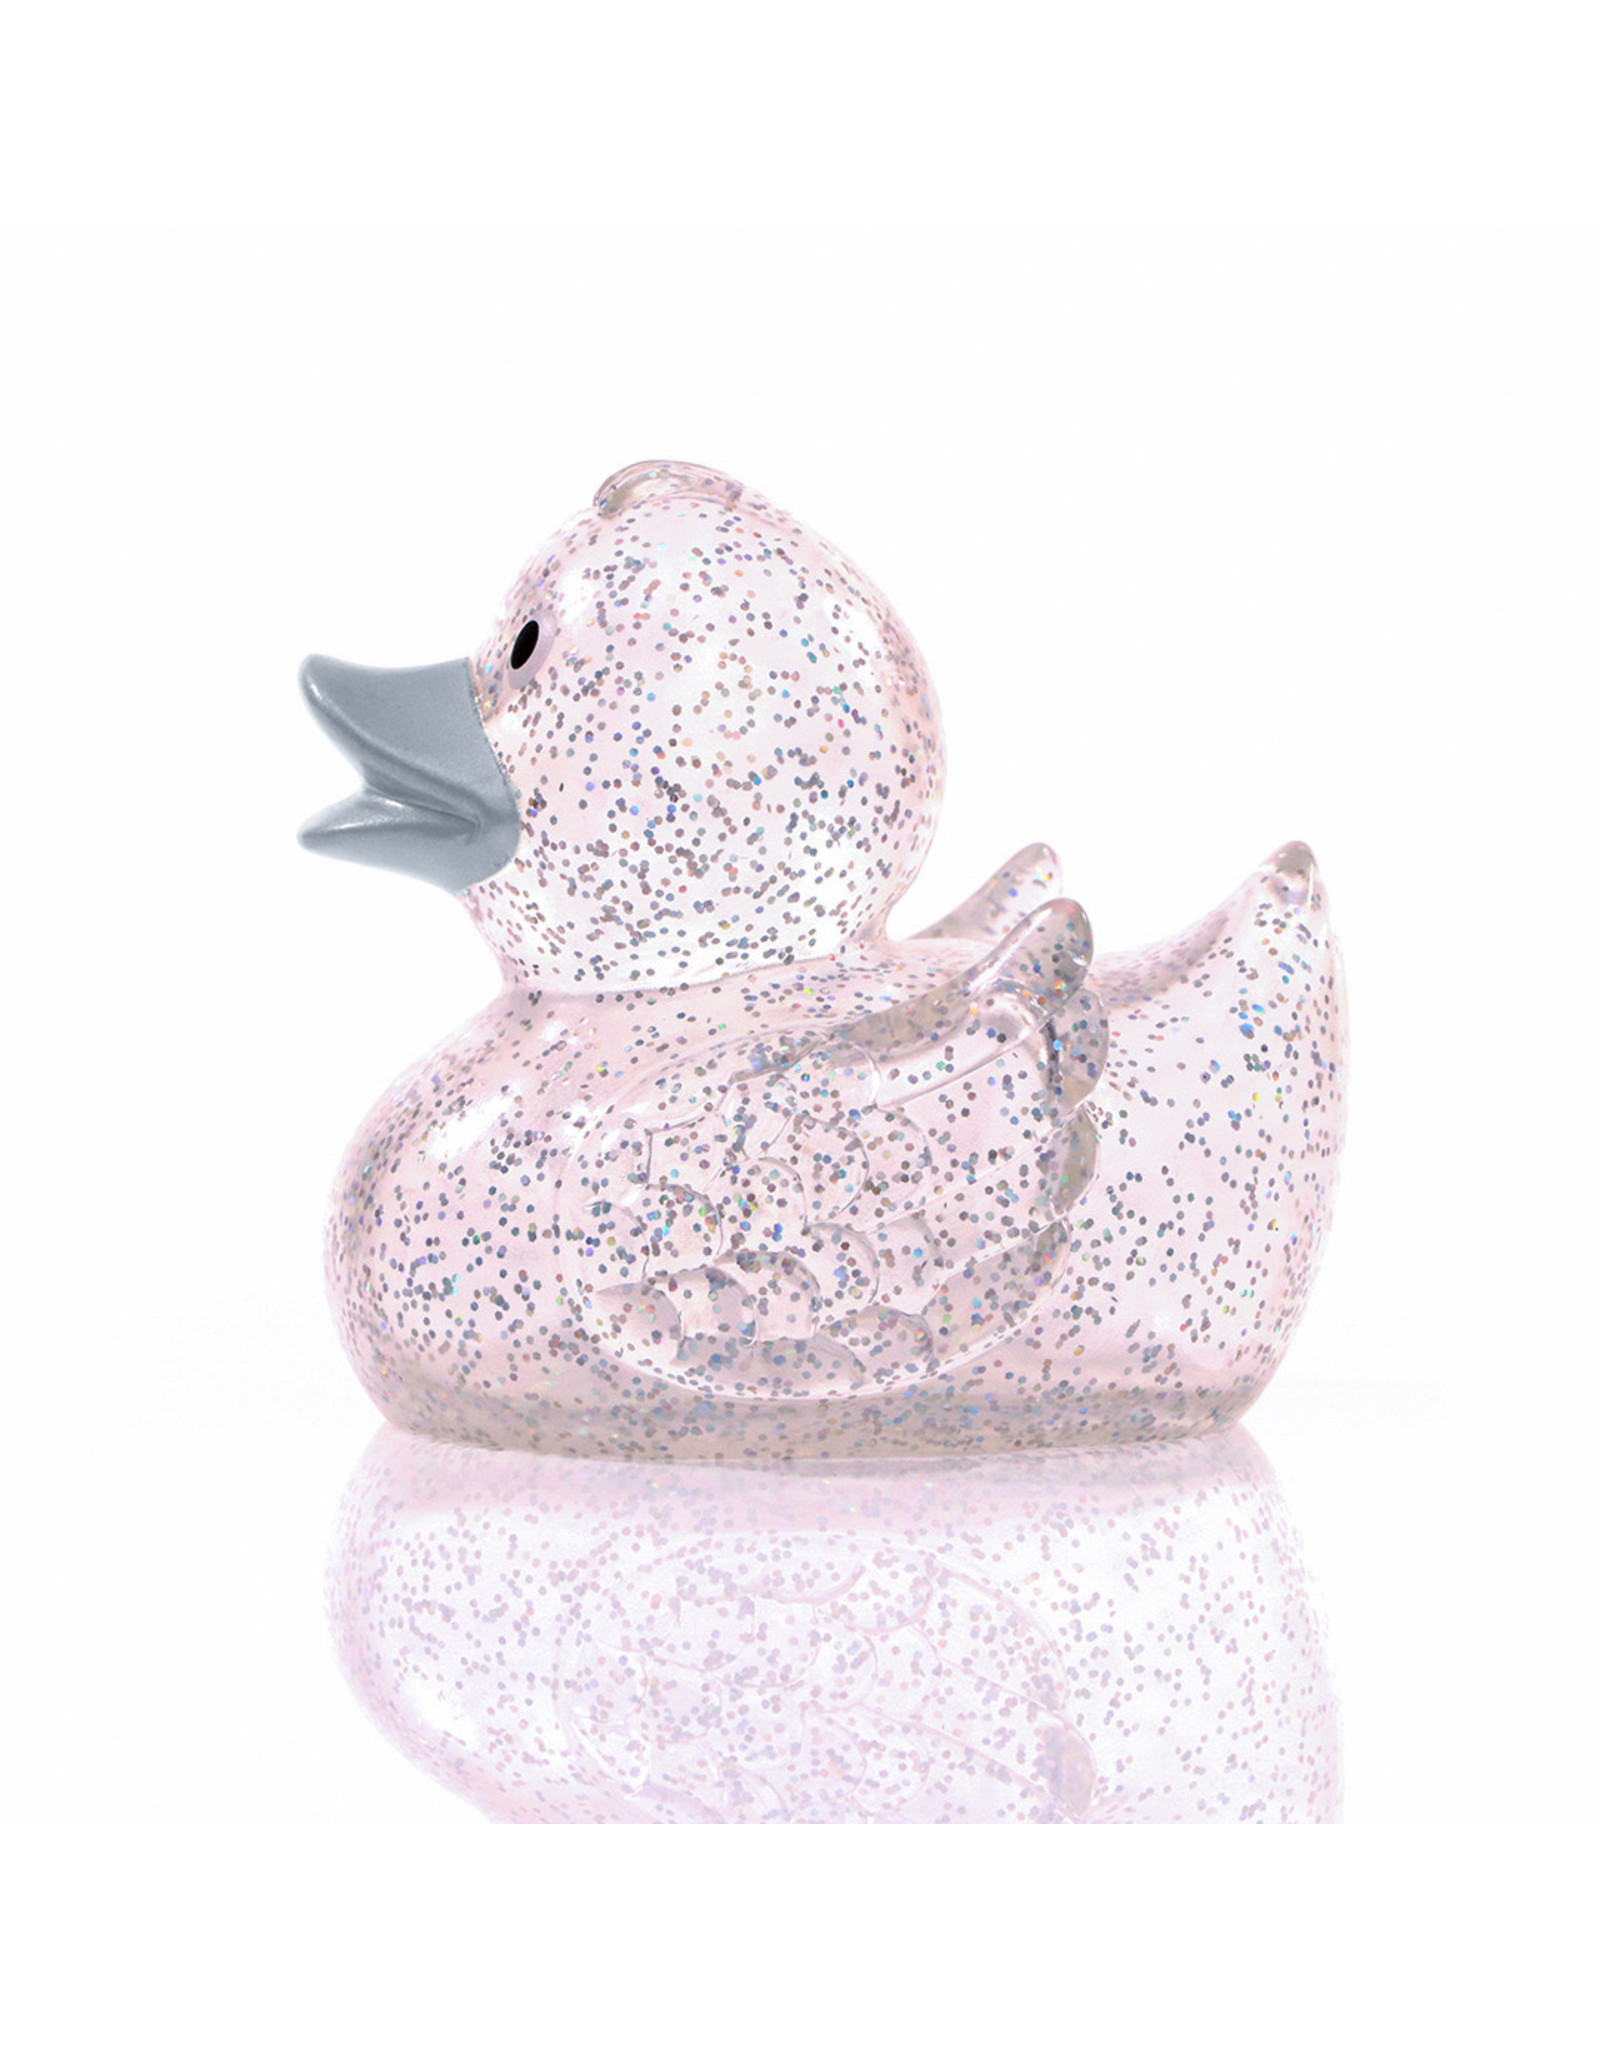 Silver Glitter Rubber Duck